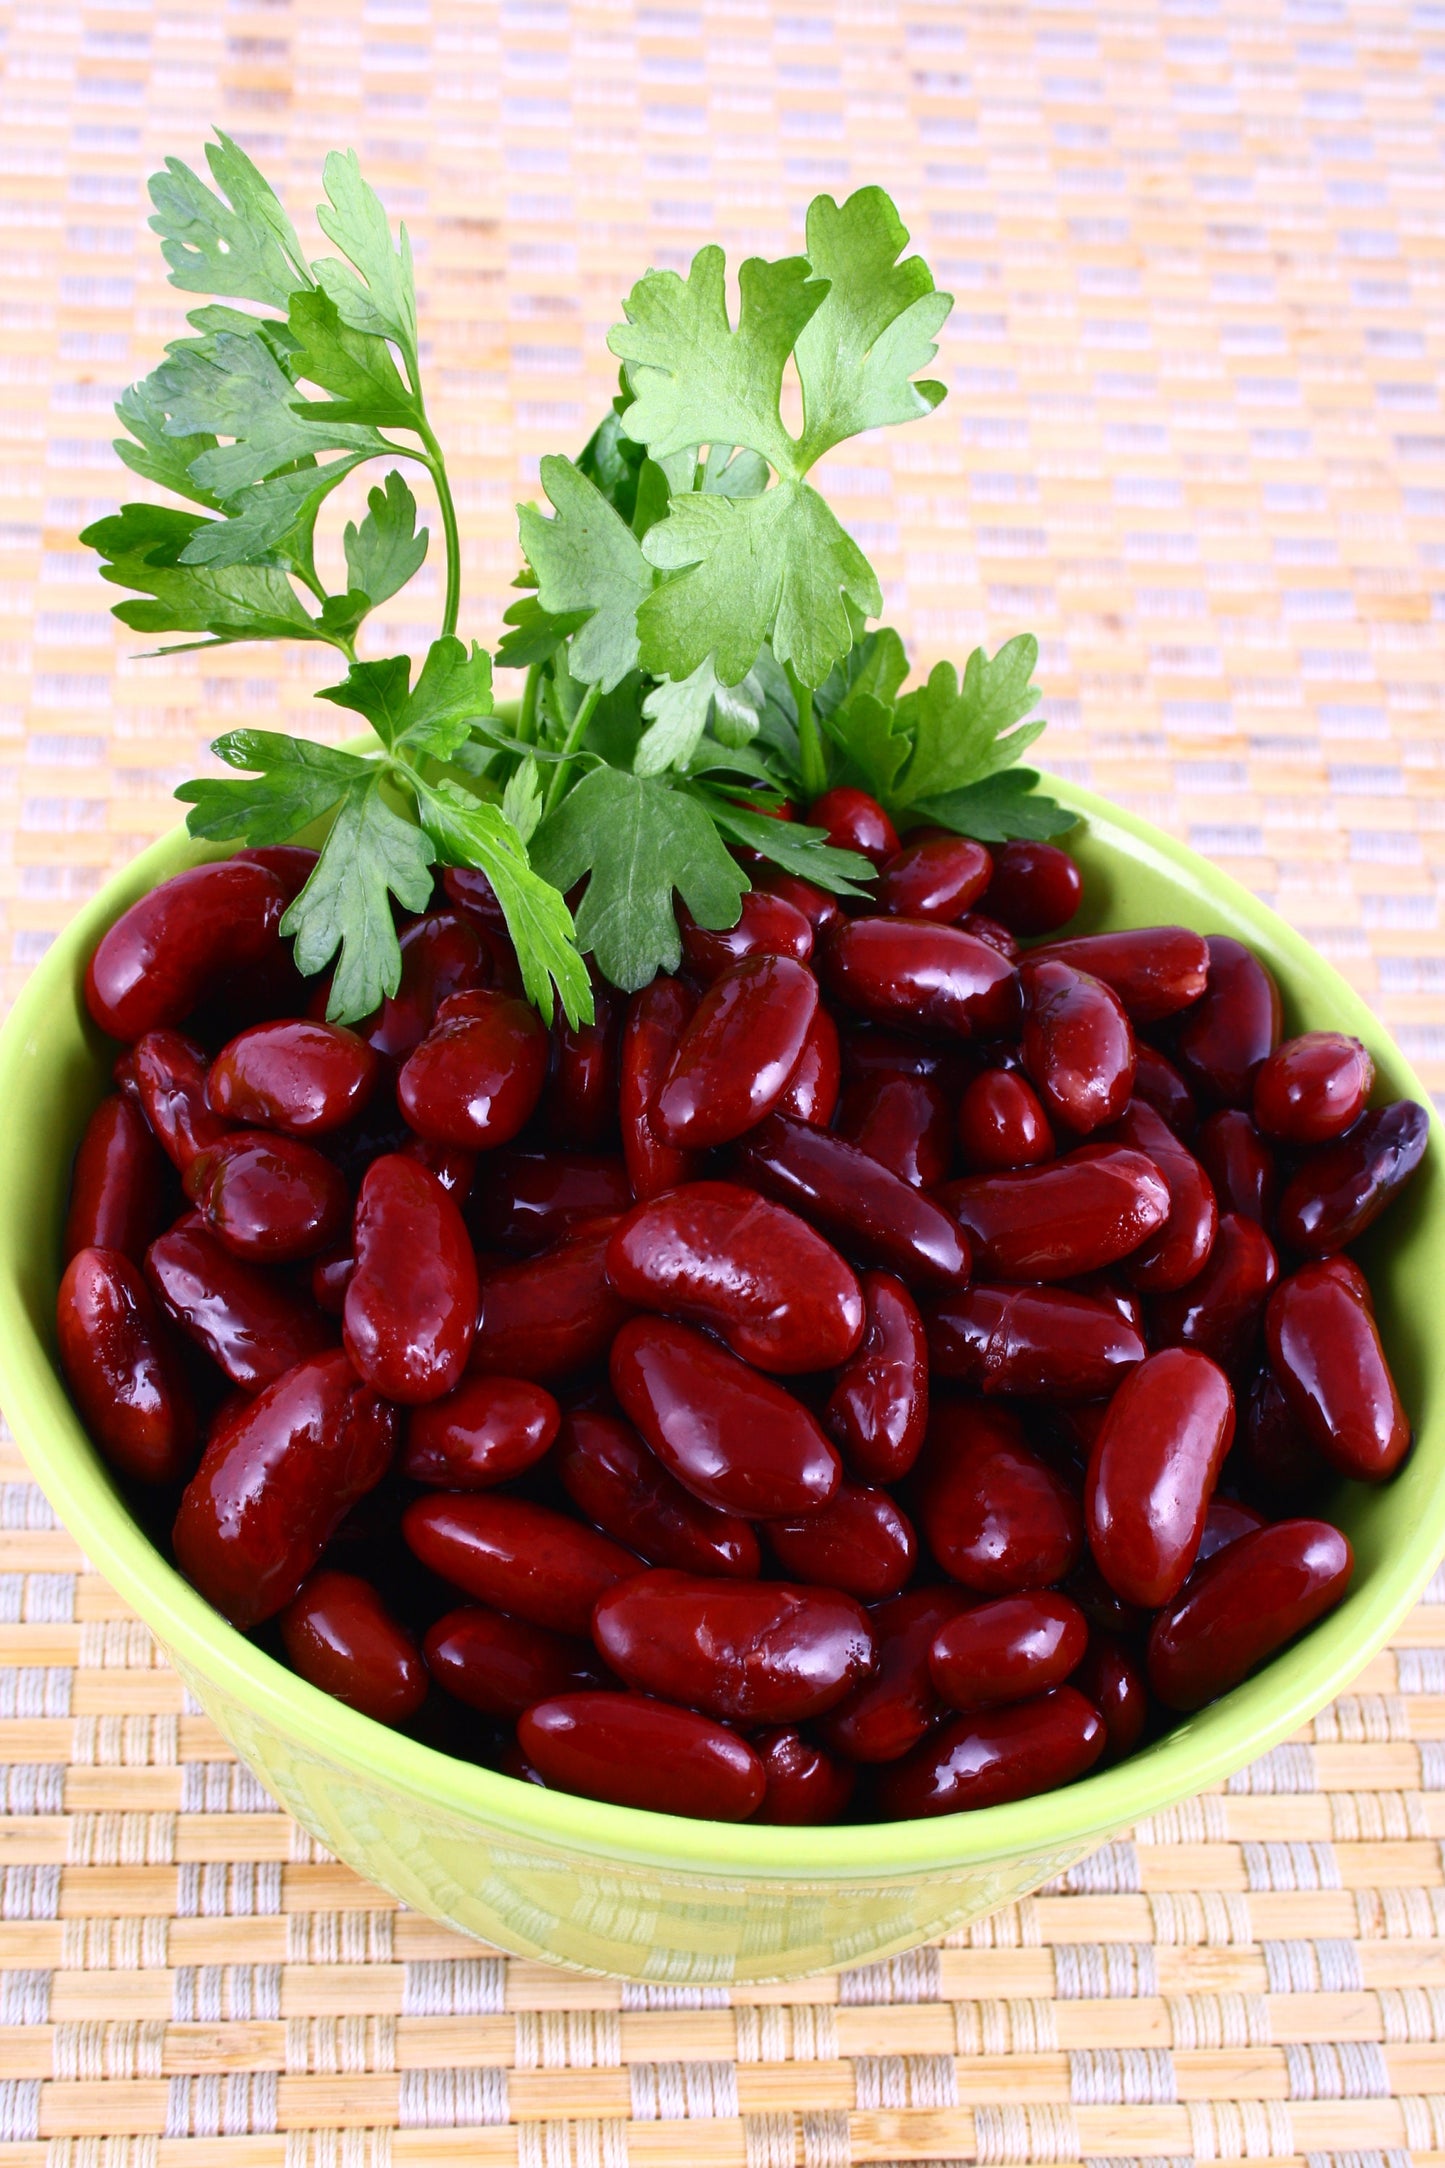 50 Charlevois DARK Red KIDNEY BEAN Chili Baked Phaseolus Vulgaris Vegetable Seed